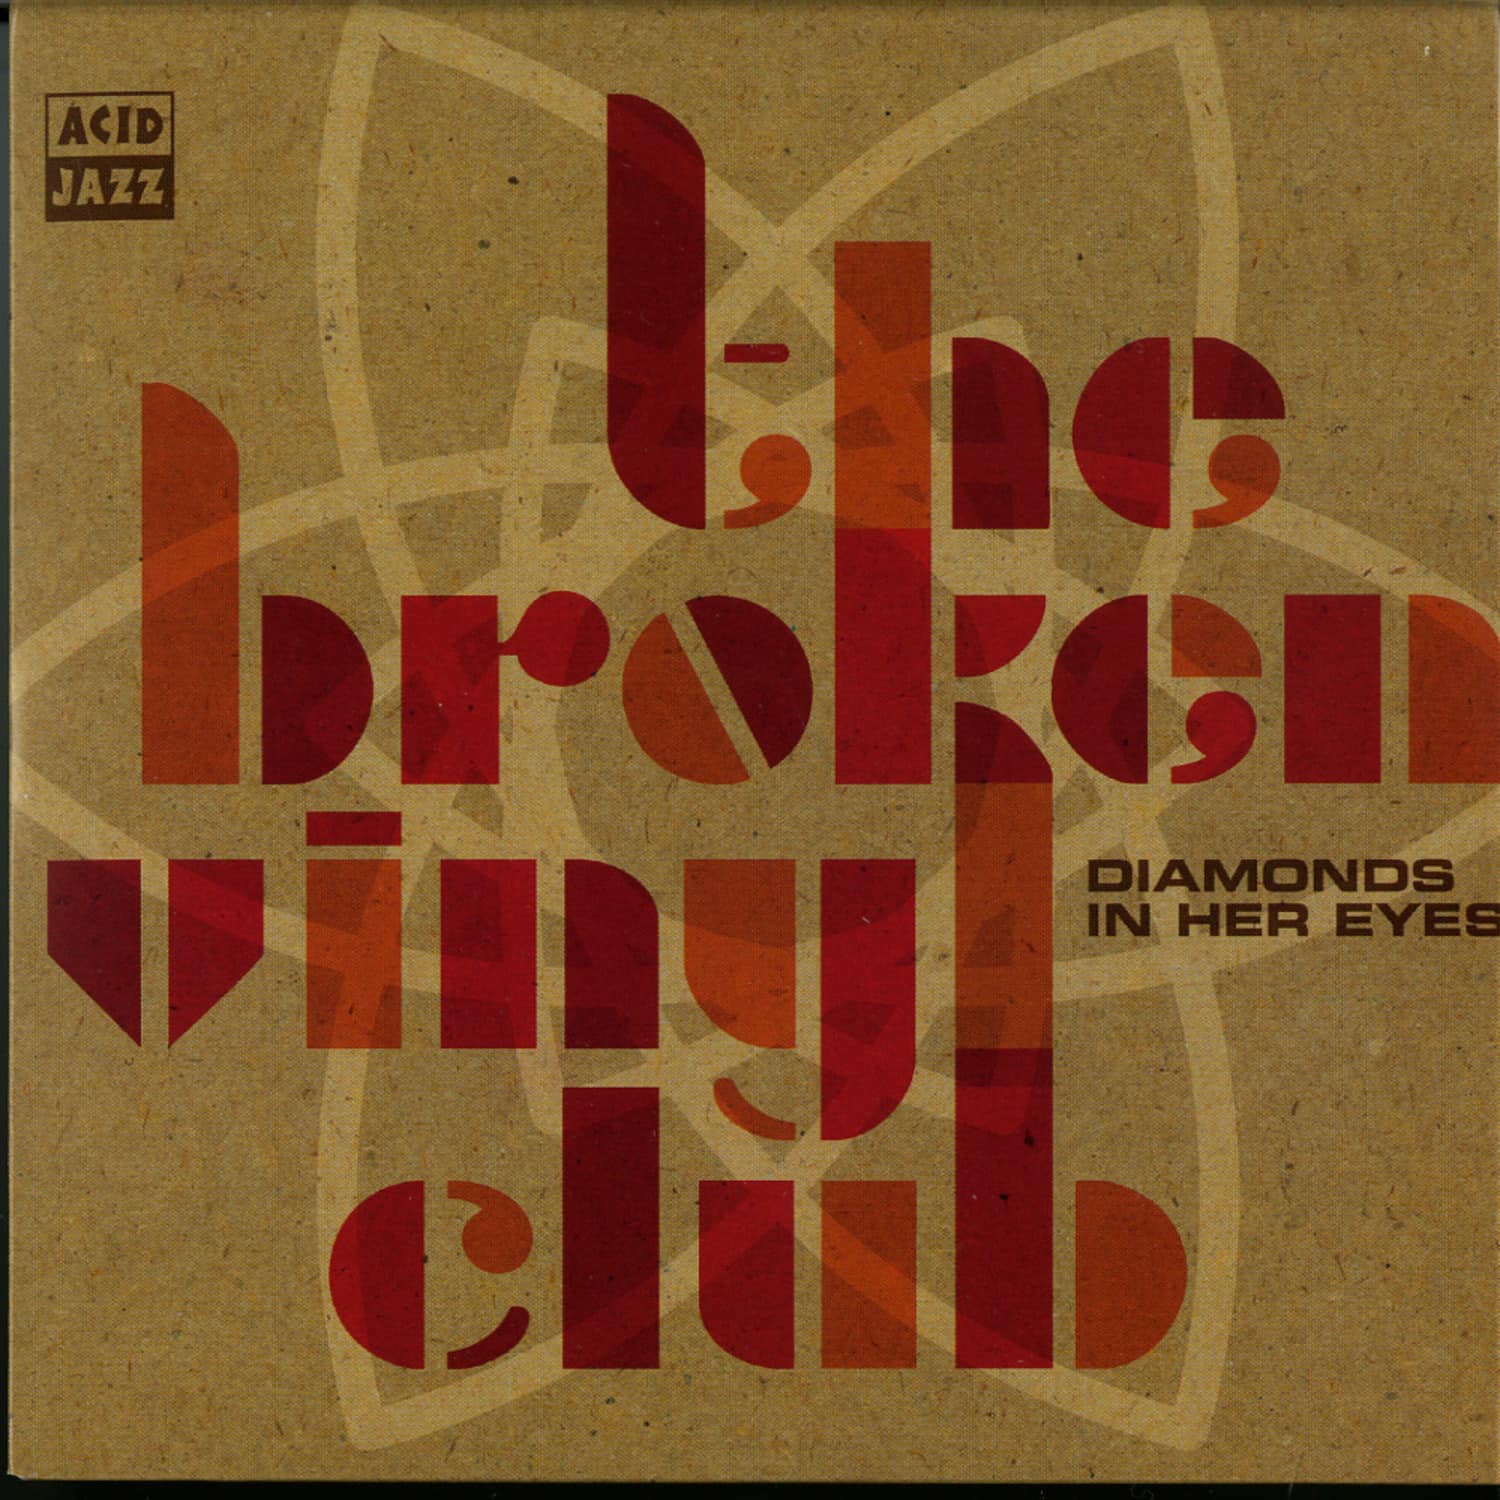 The Broken Vinyl Club - DIAMONDS IN HER EYES 